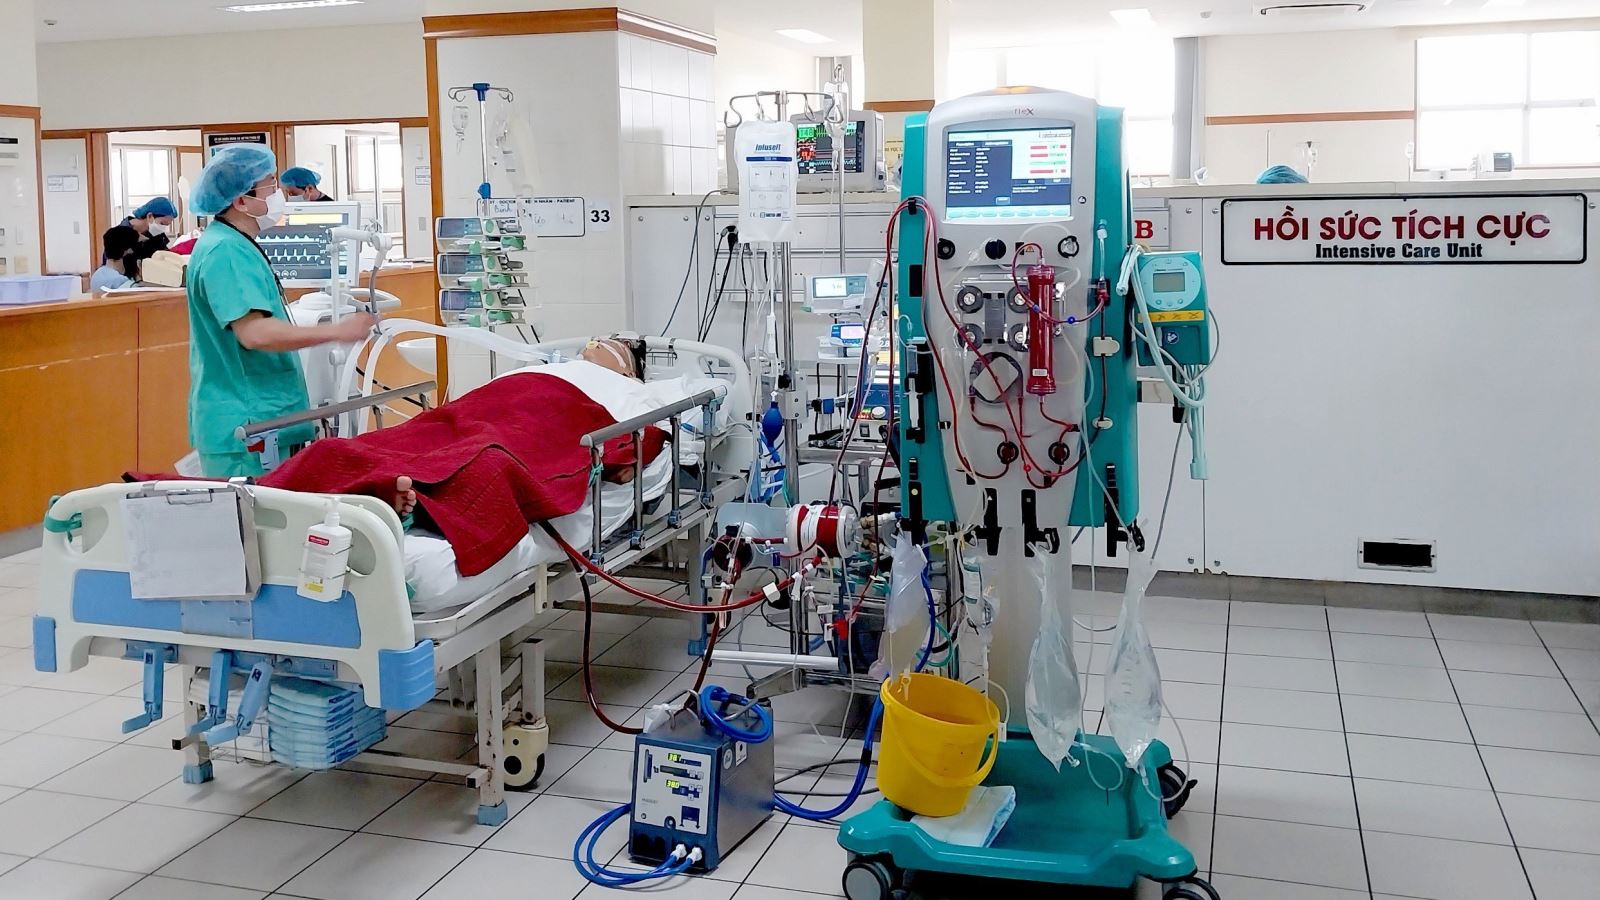 Bác sĩ bệnh viện Bệnh viện Trung ương Huế cùng với kĩ thuật hiện đại điều trị cho bệnh nhân D. bị sốc nhiễm khuẩn, suy đa tạng, suy hô hấp cấp tiến triển nặng.